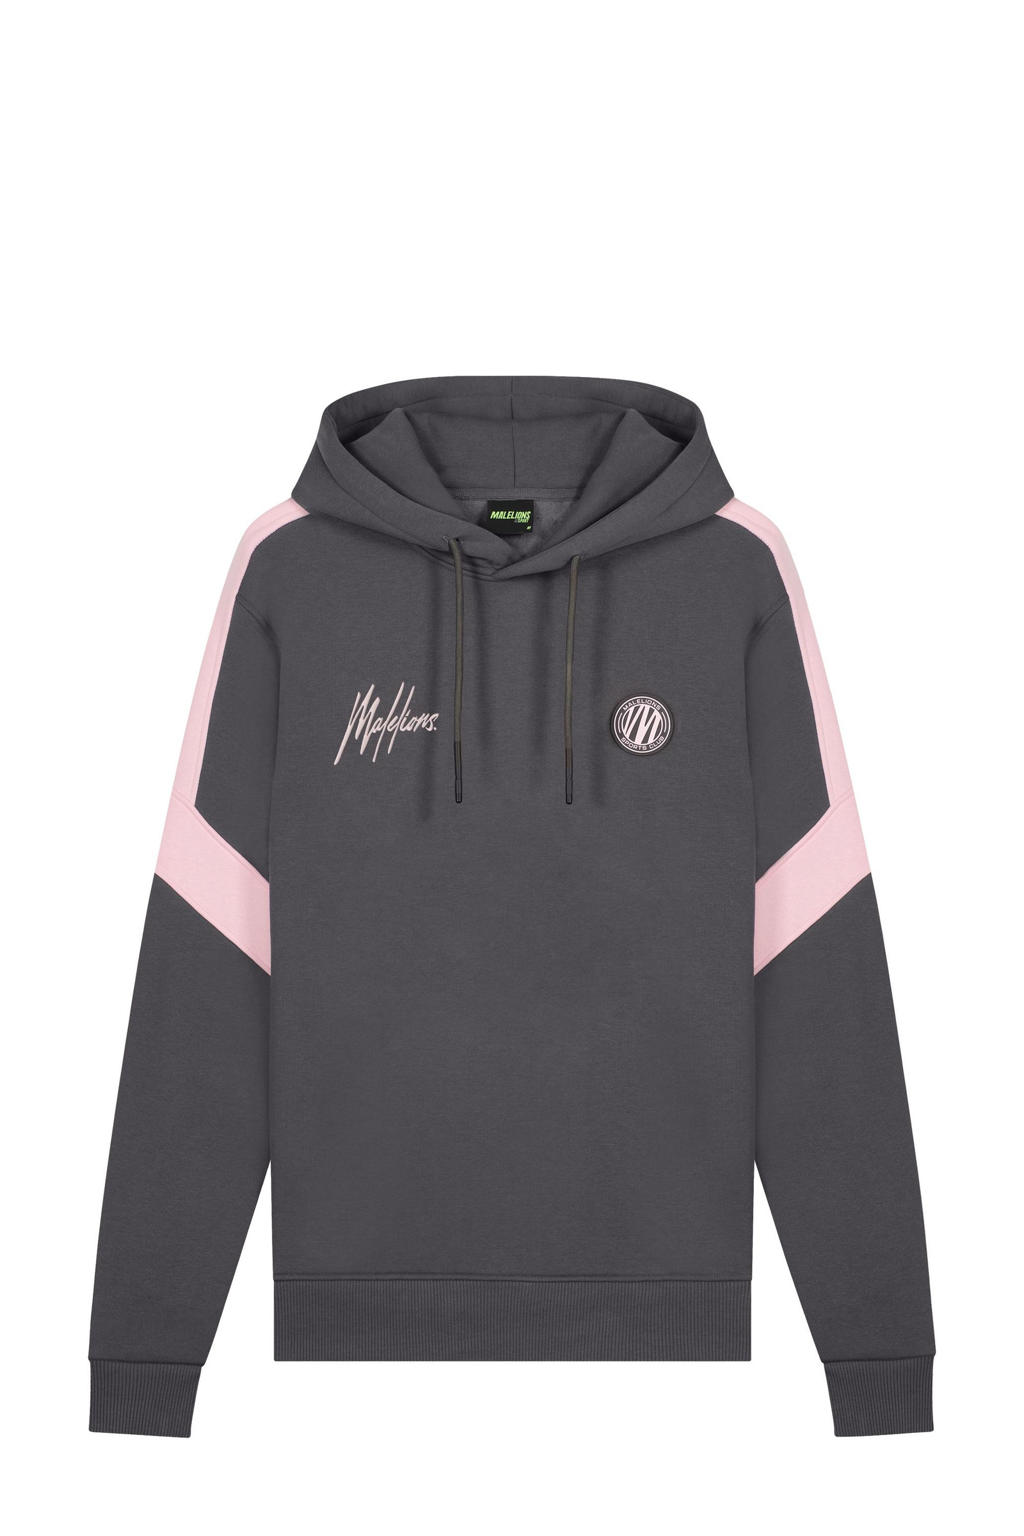 Malelions hoodie grijs/roze